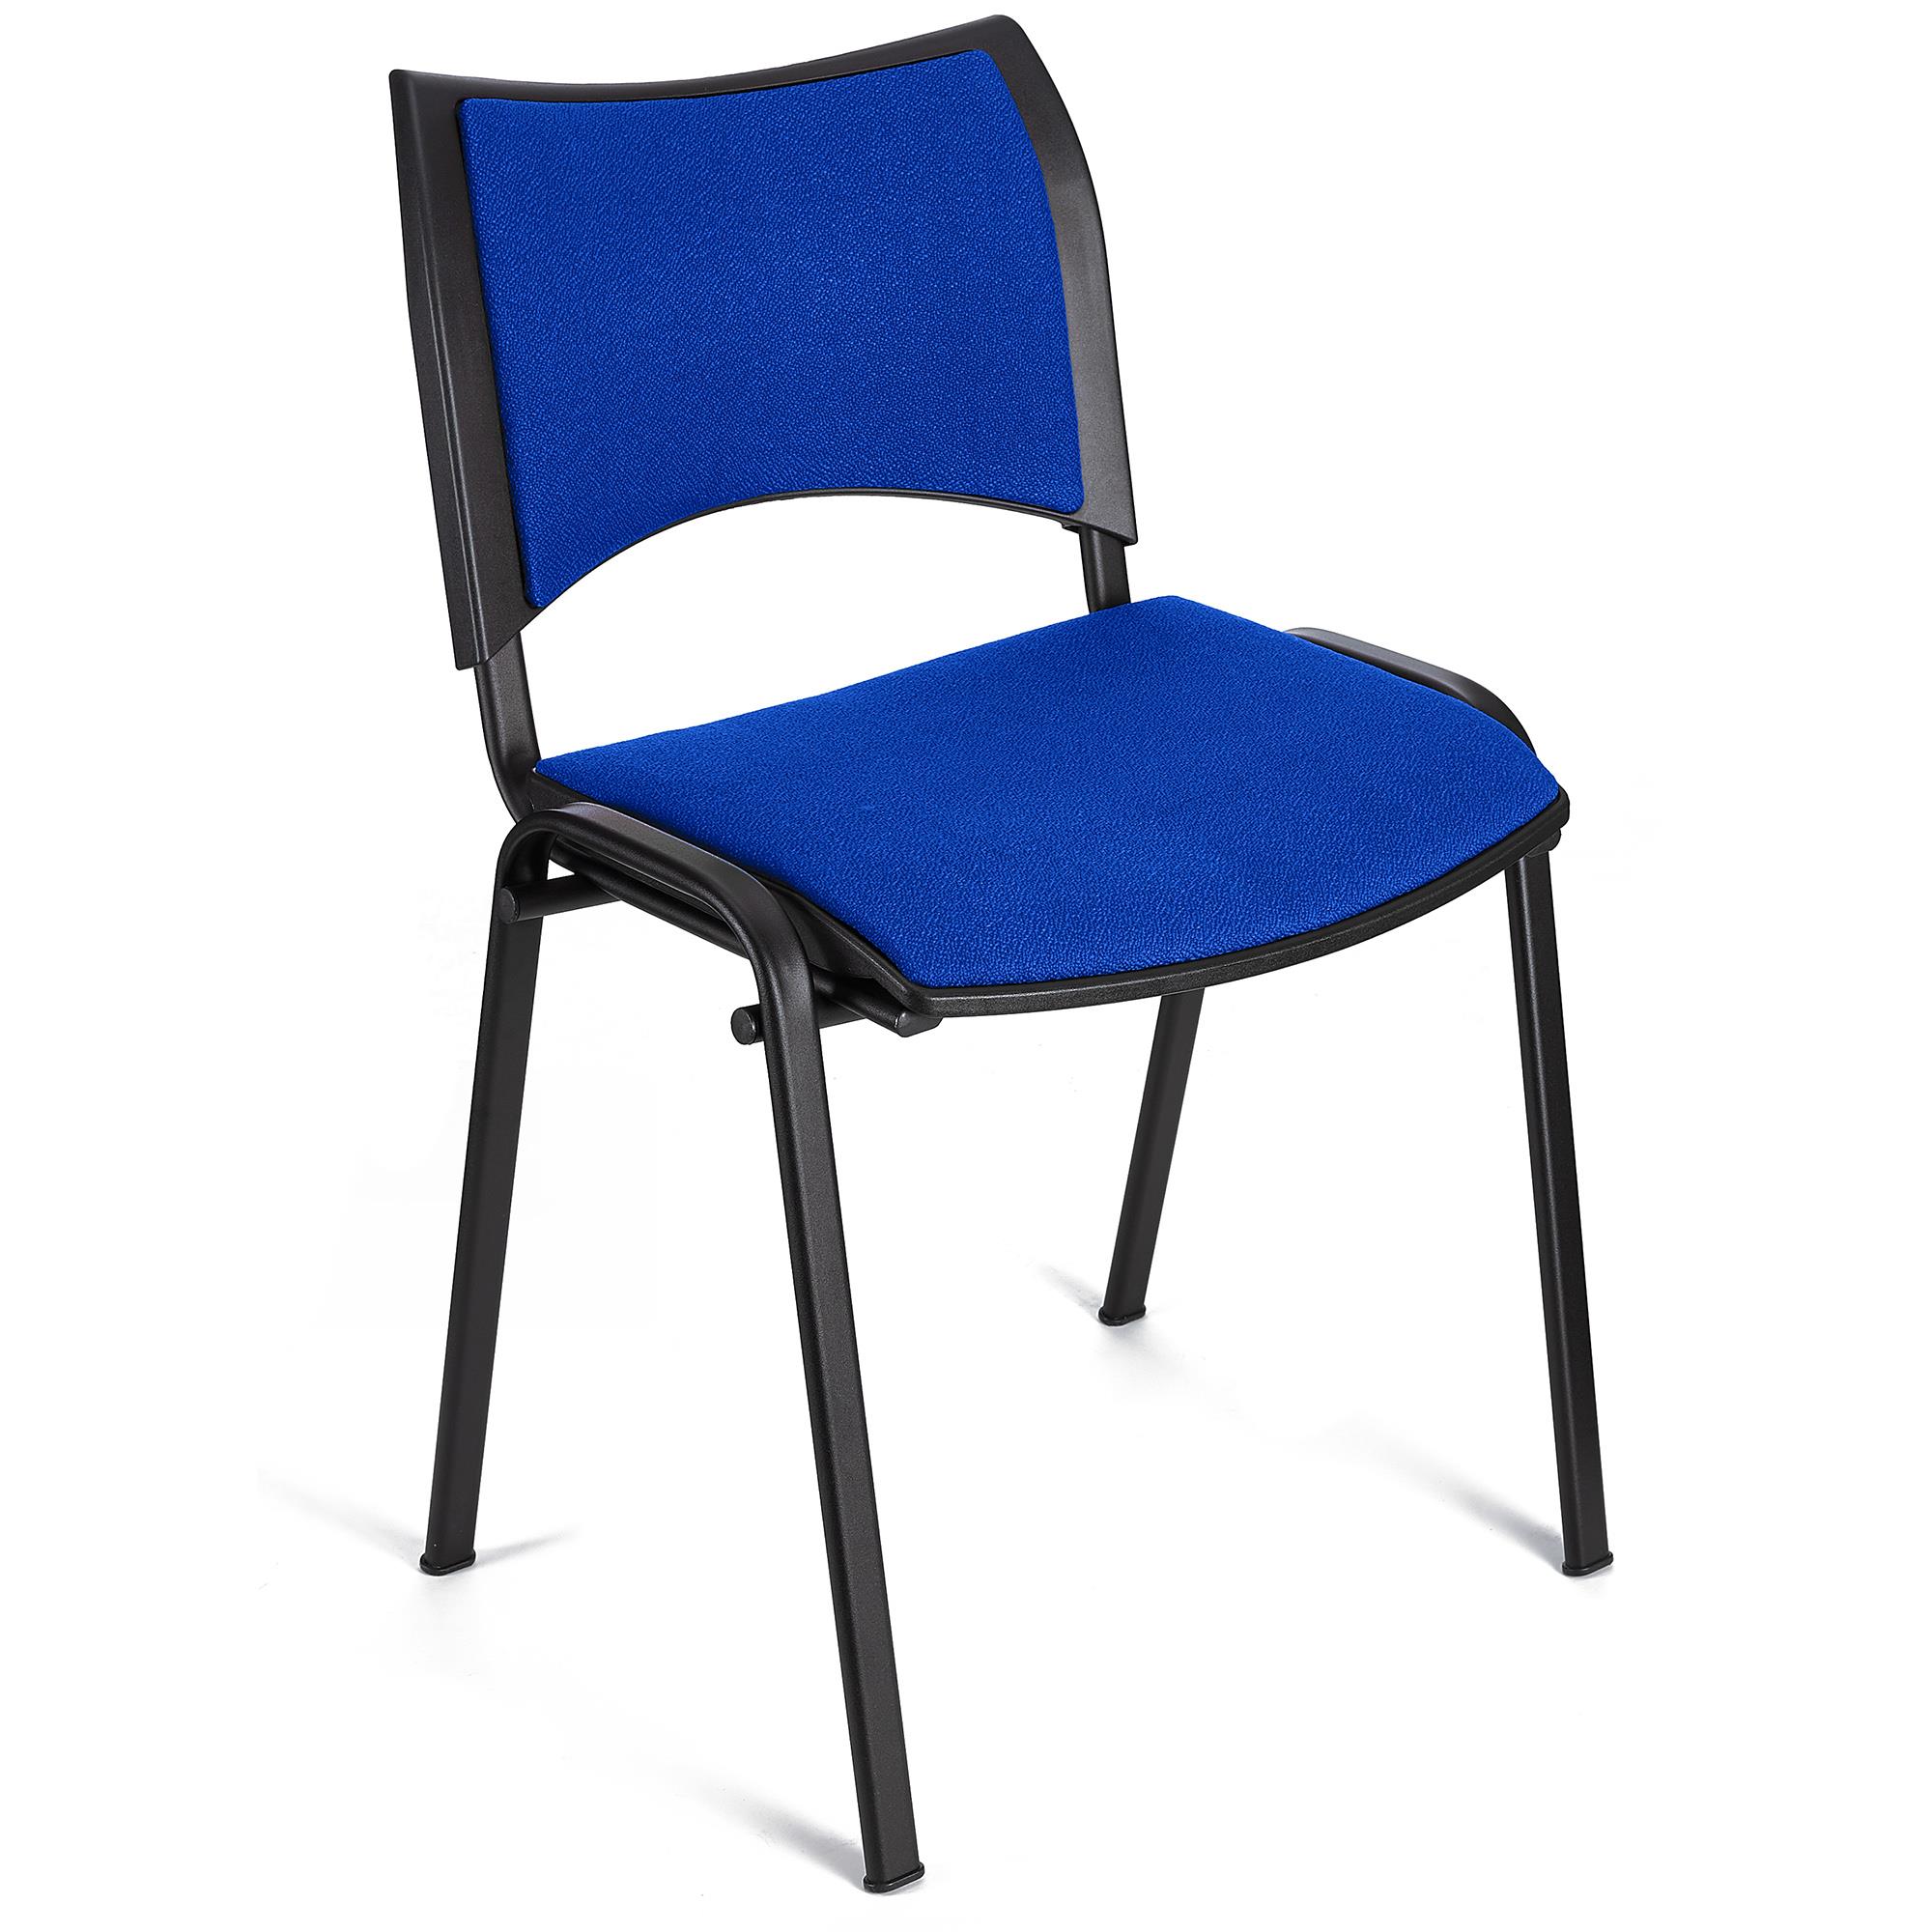 Cadeira de Visita ROMEL, Prática e Empilhável, Pernas Pretas, Em Pano, Azul